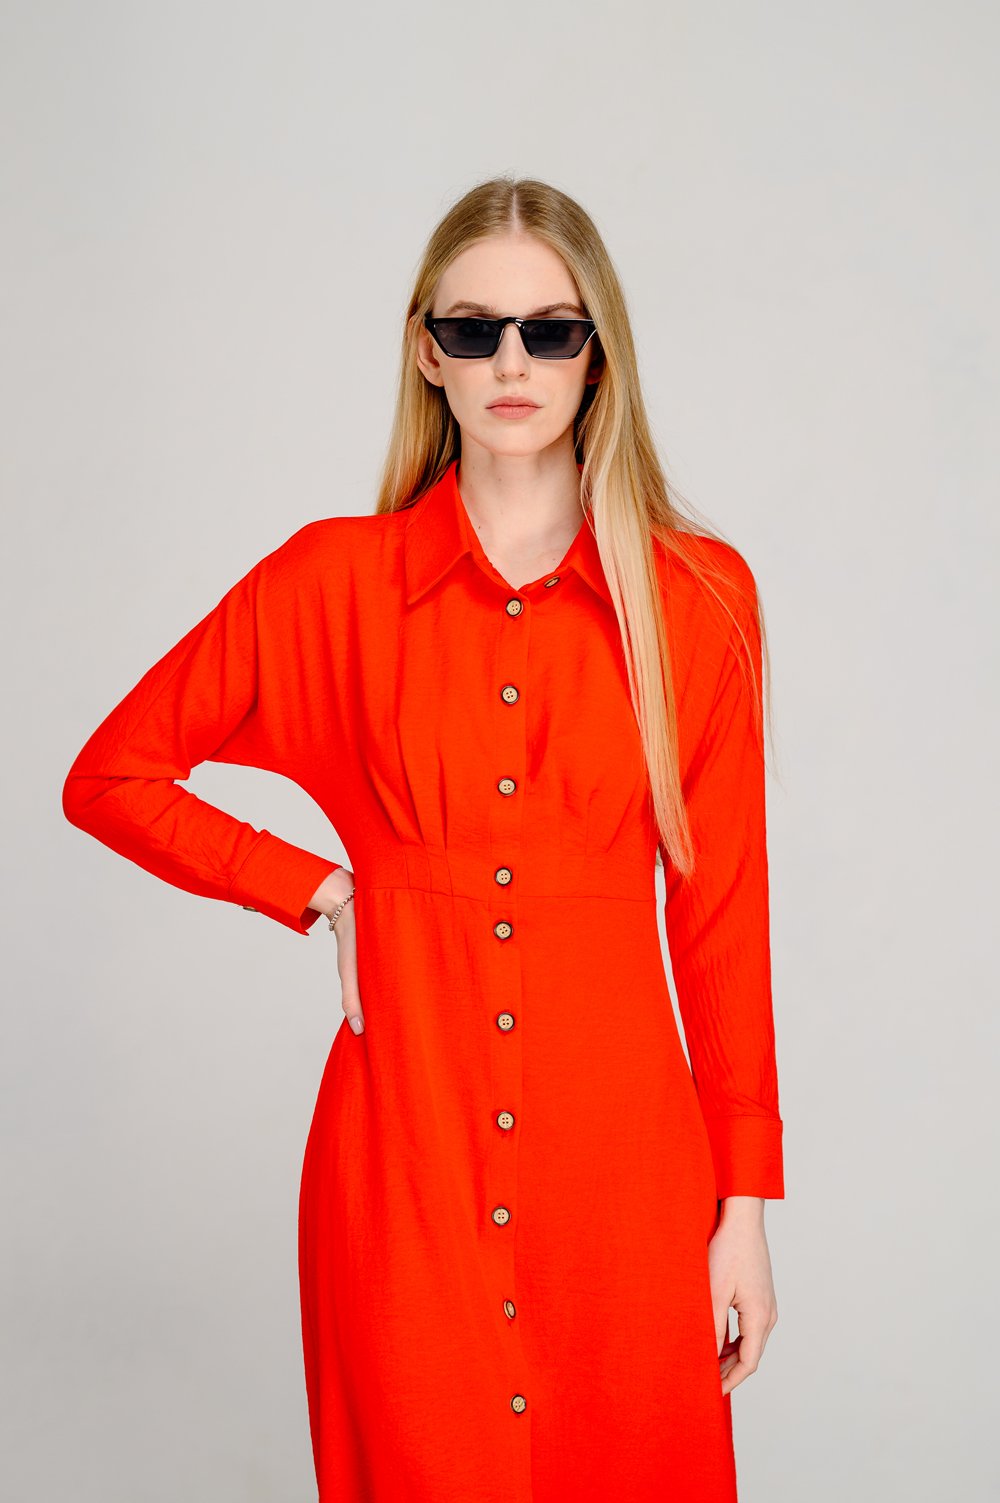 Оранжевое полуприталенное платье с эффектной юбкой-трапецией